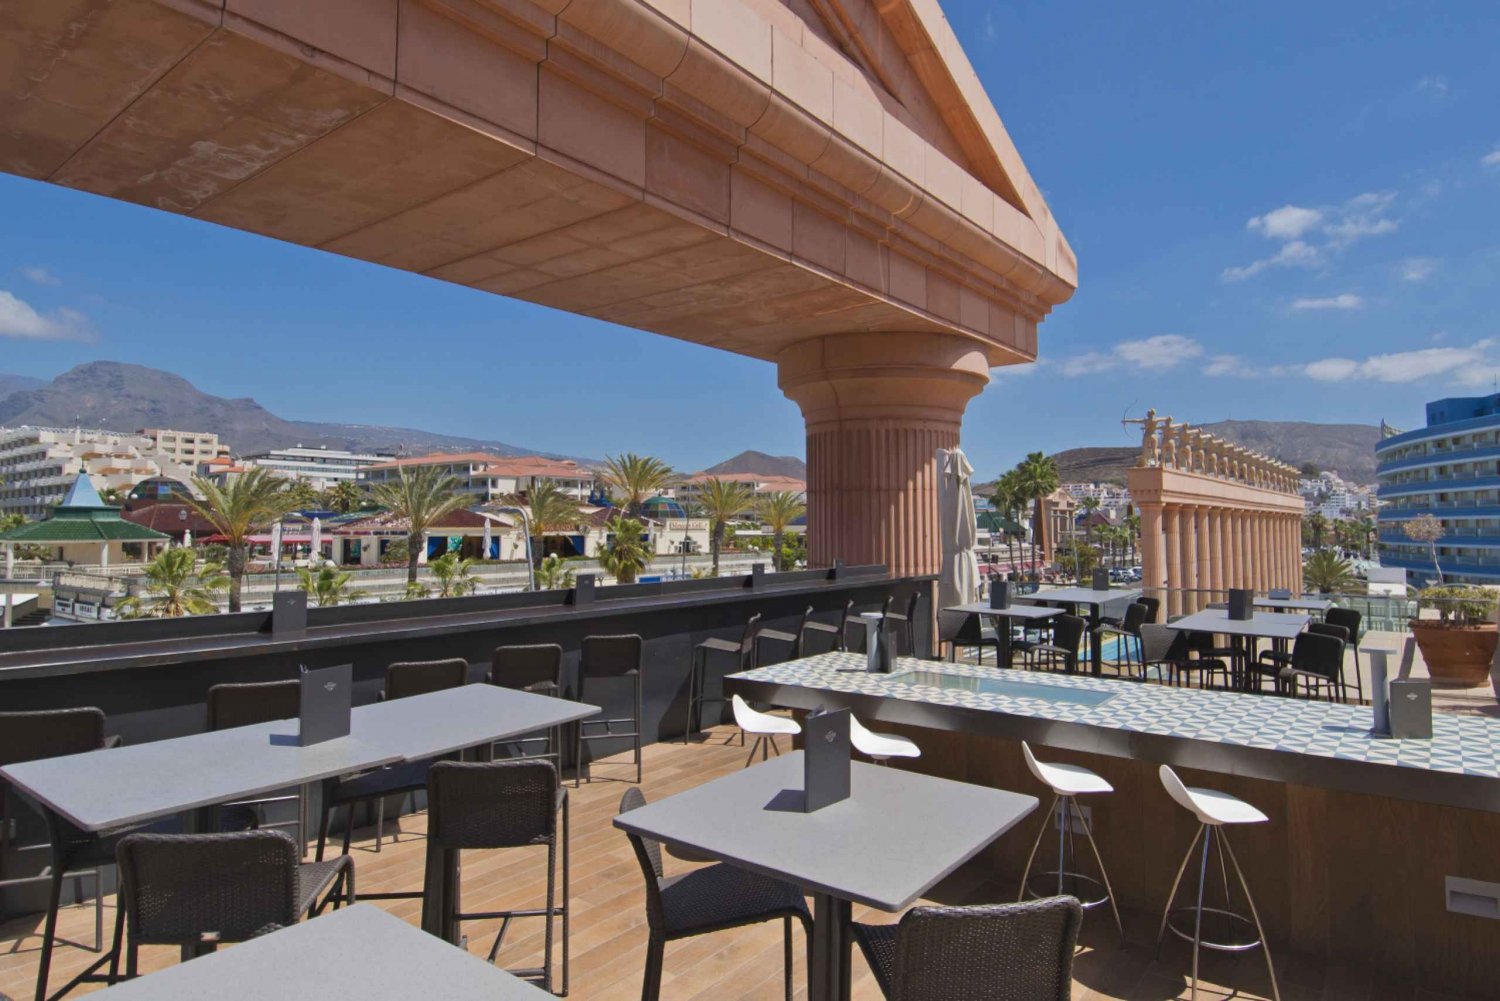 Tenerife: Hard Rock Cafe Set Menu Lunch or Dinner & Drink